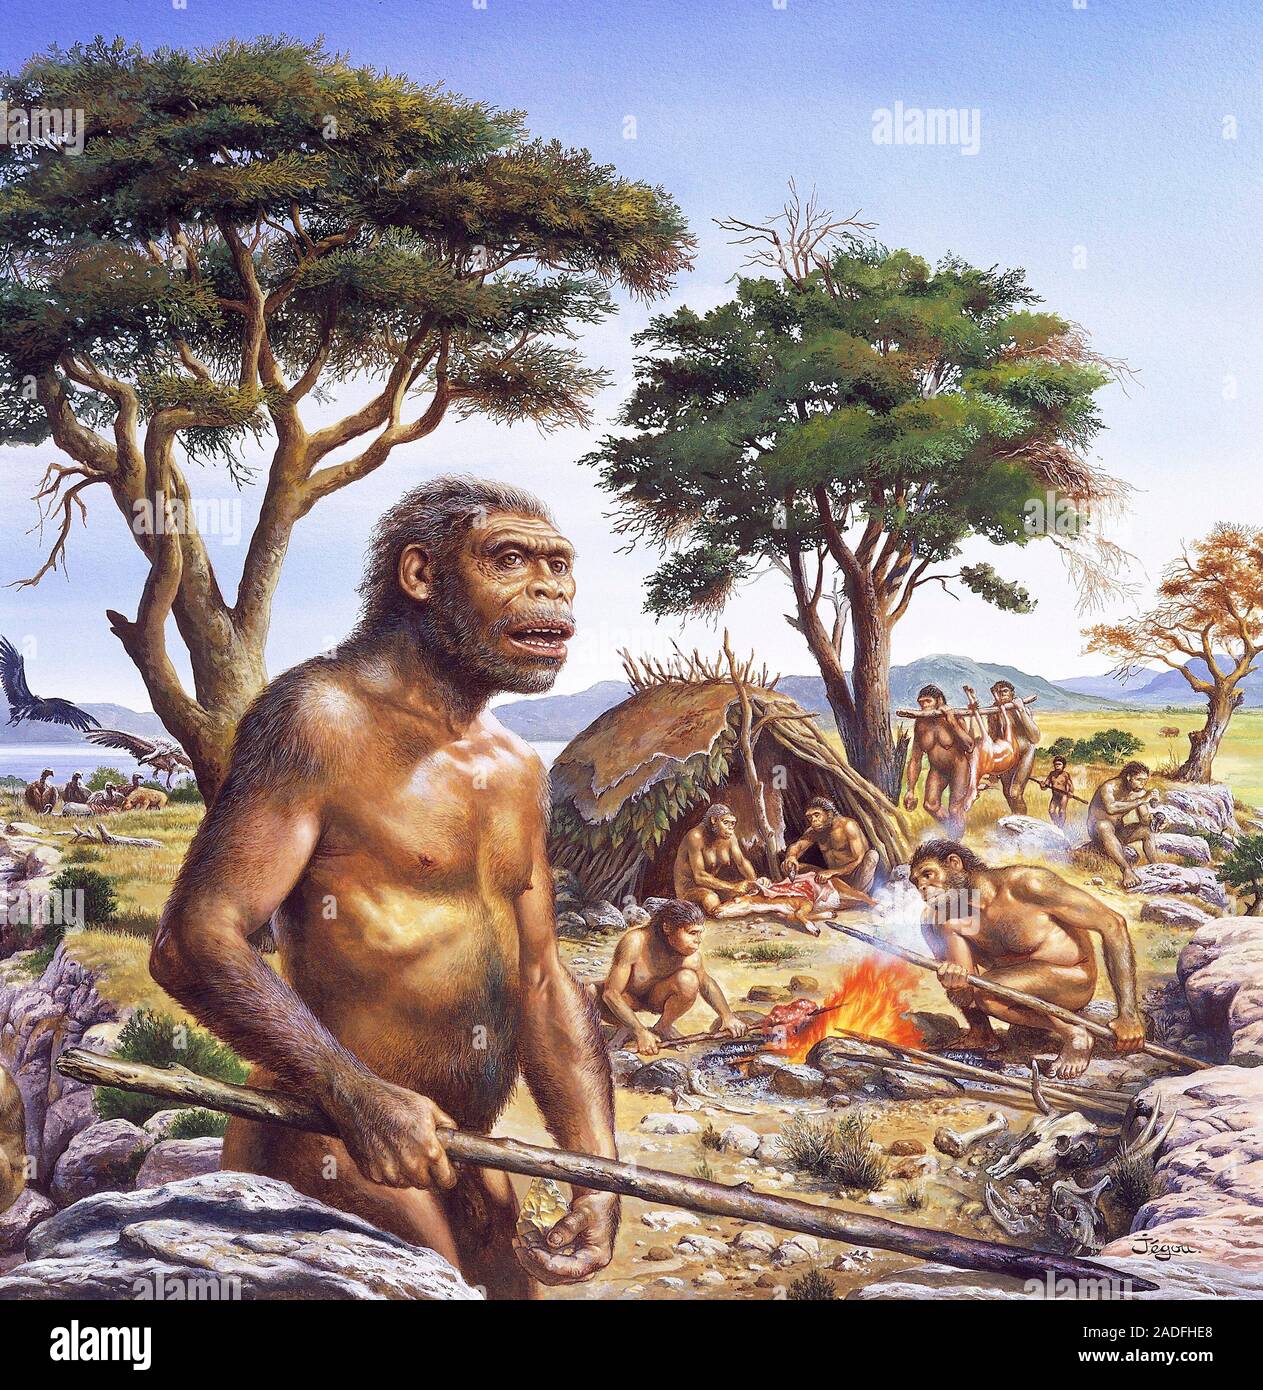 Где по мнению ученых появились первые люди. Человек прямоходящий homo Erectus. Хомо хабилис эпоха. Архантропы (homo Erectus). Человек прямоходящий Африки homo Erectus.